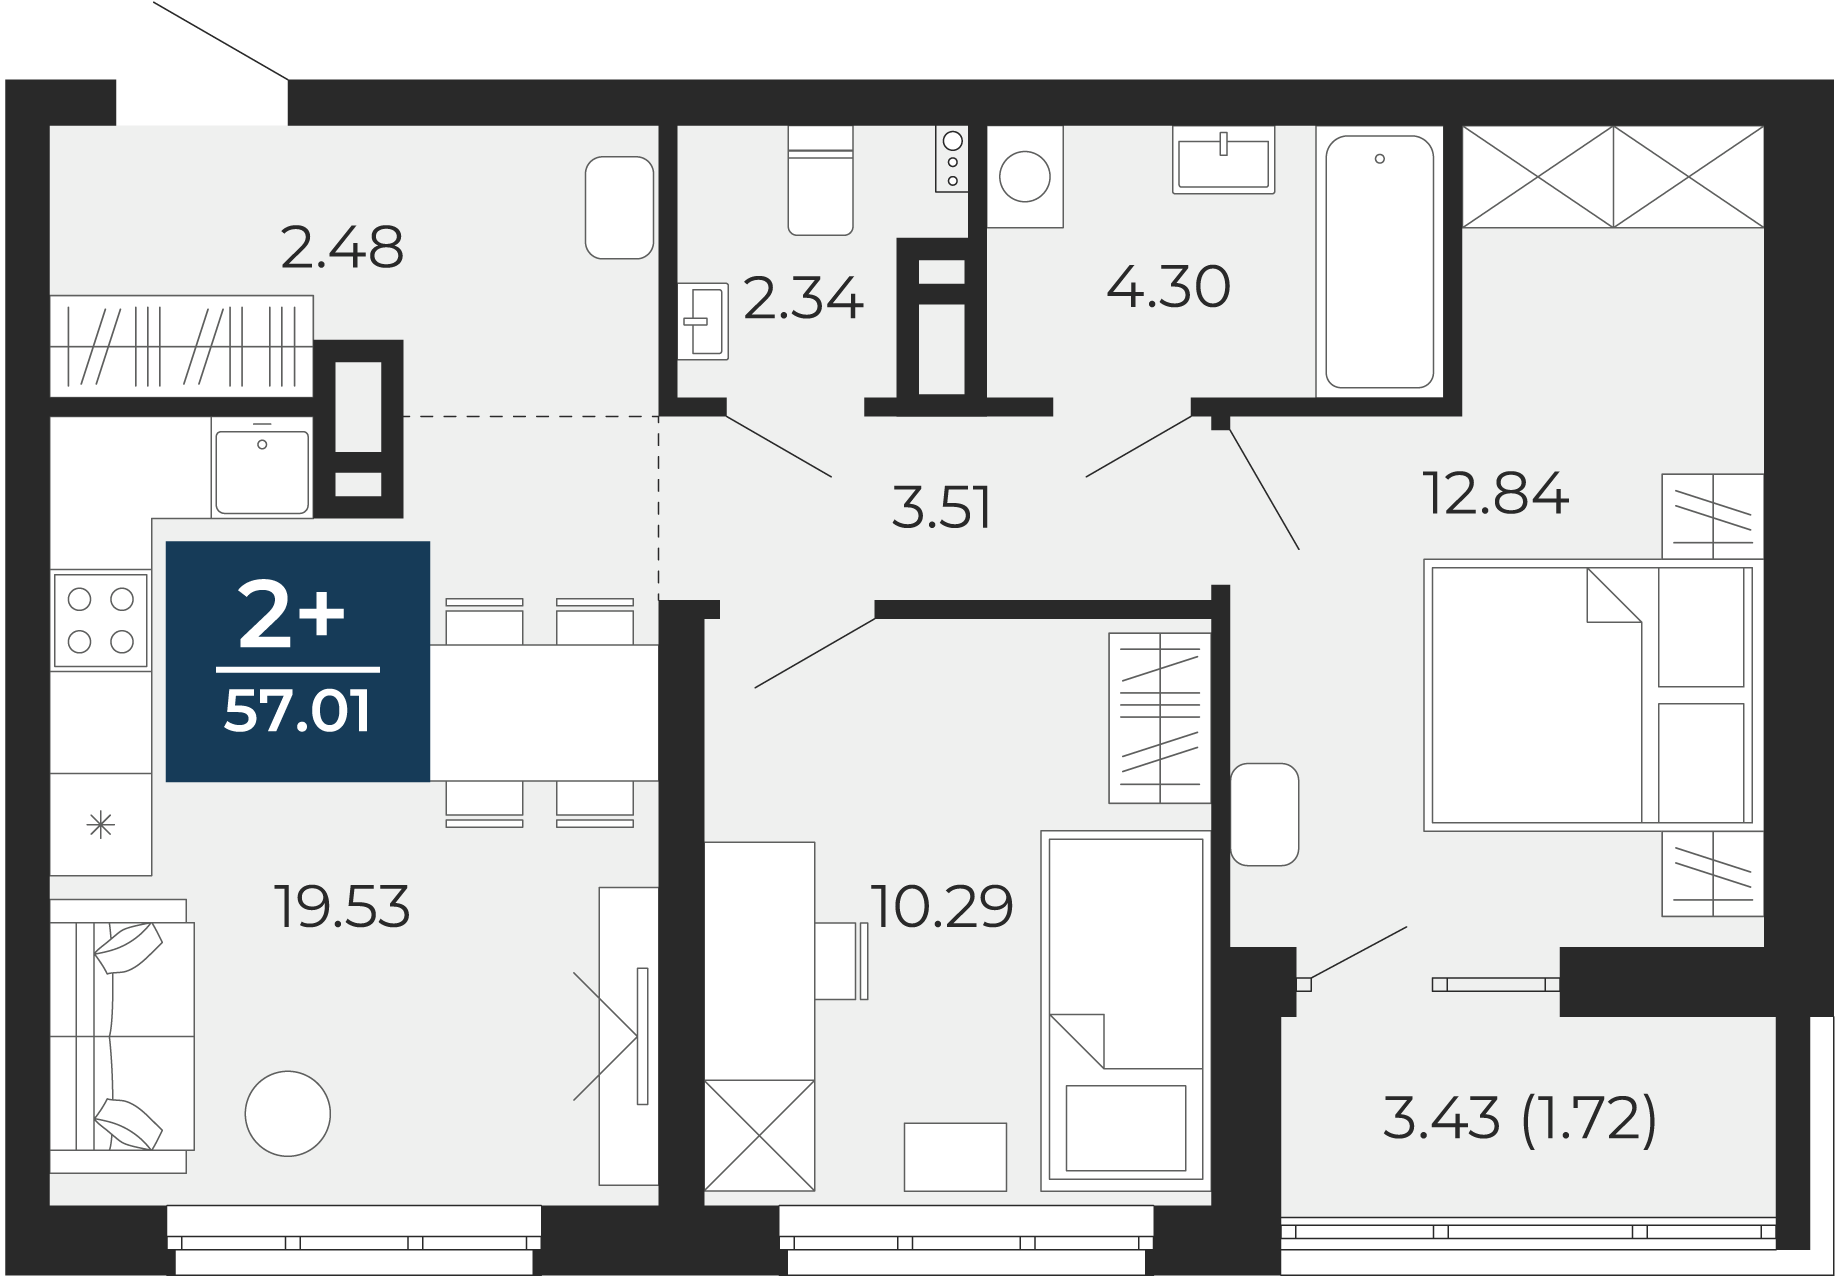 Квартира № 356, 2-комнатная, 57.01 кв. м, 3 этаж